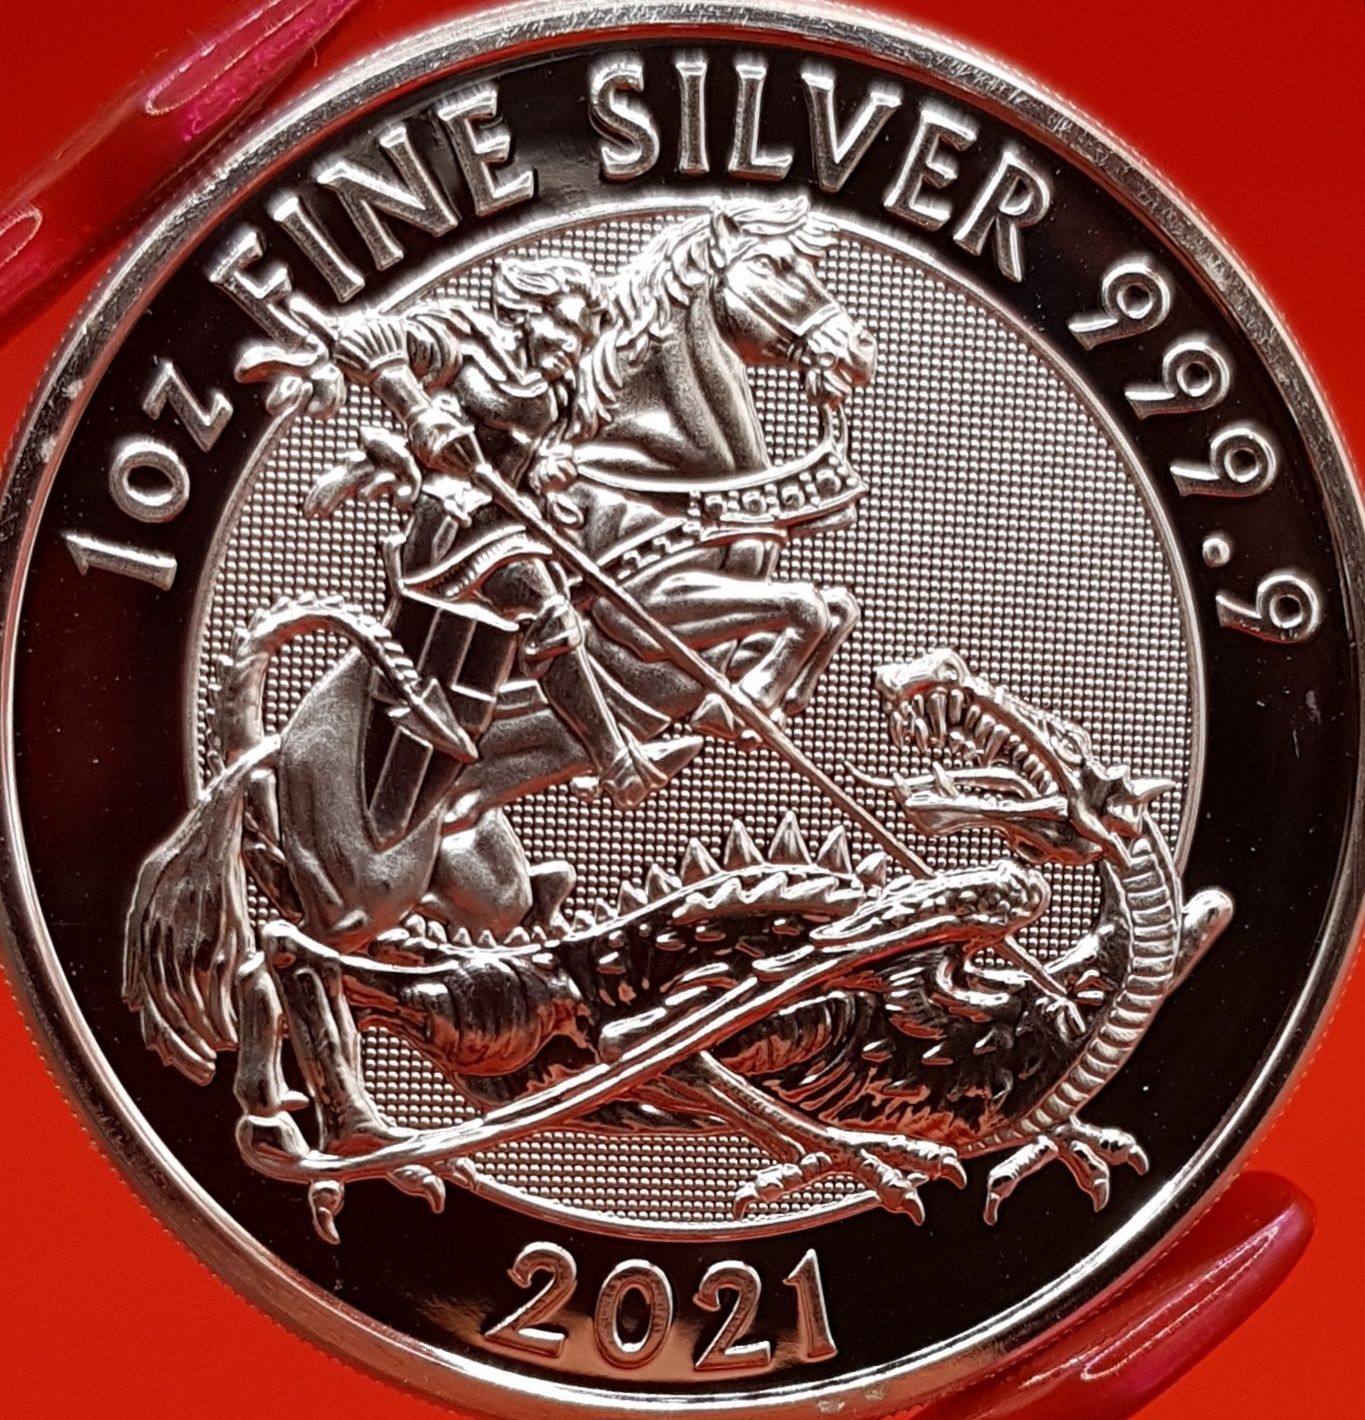 Marea Britanie Royal Mint monede lingou argint 999